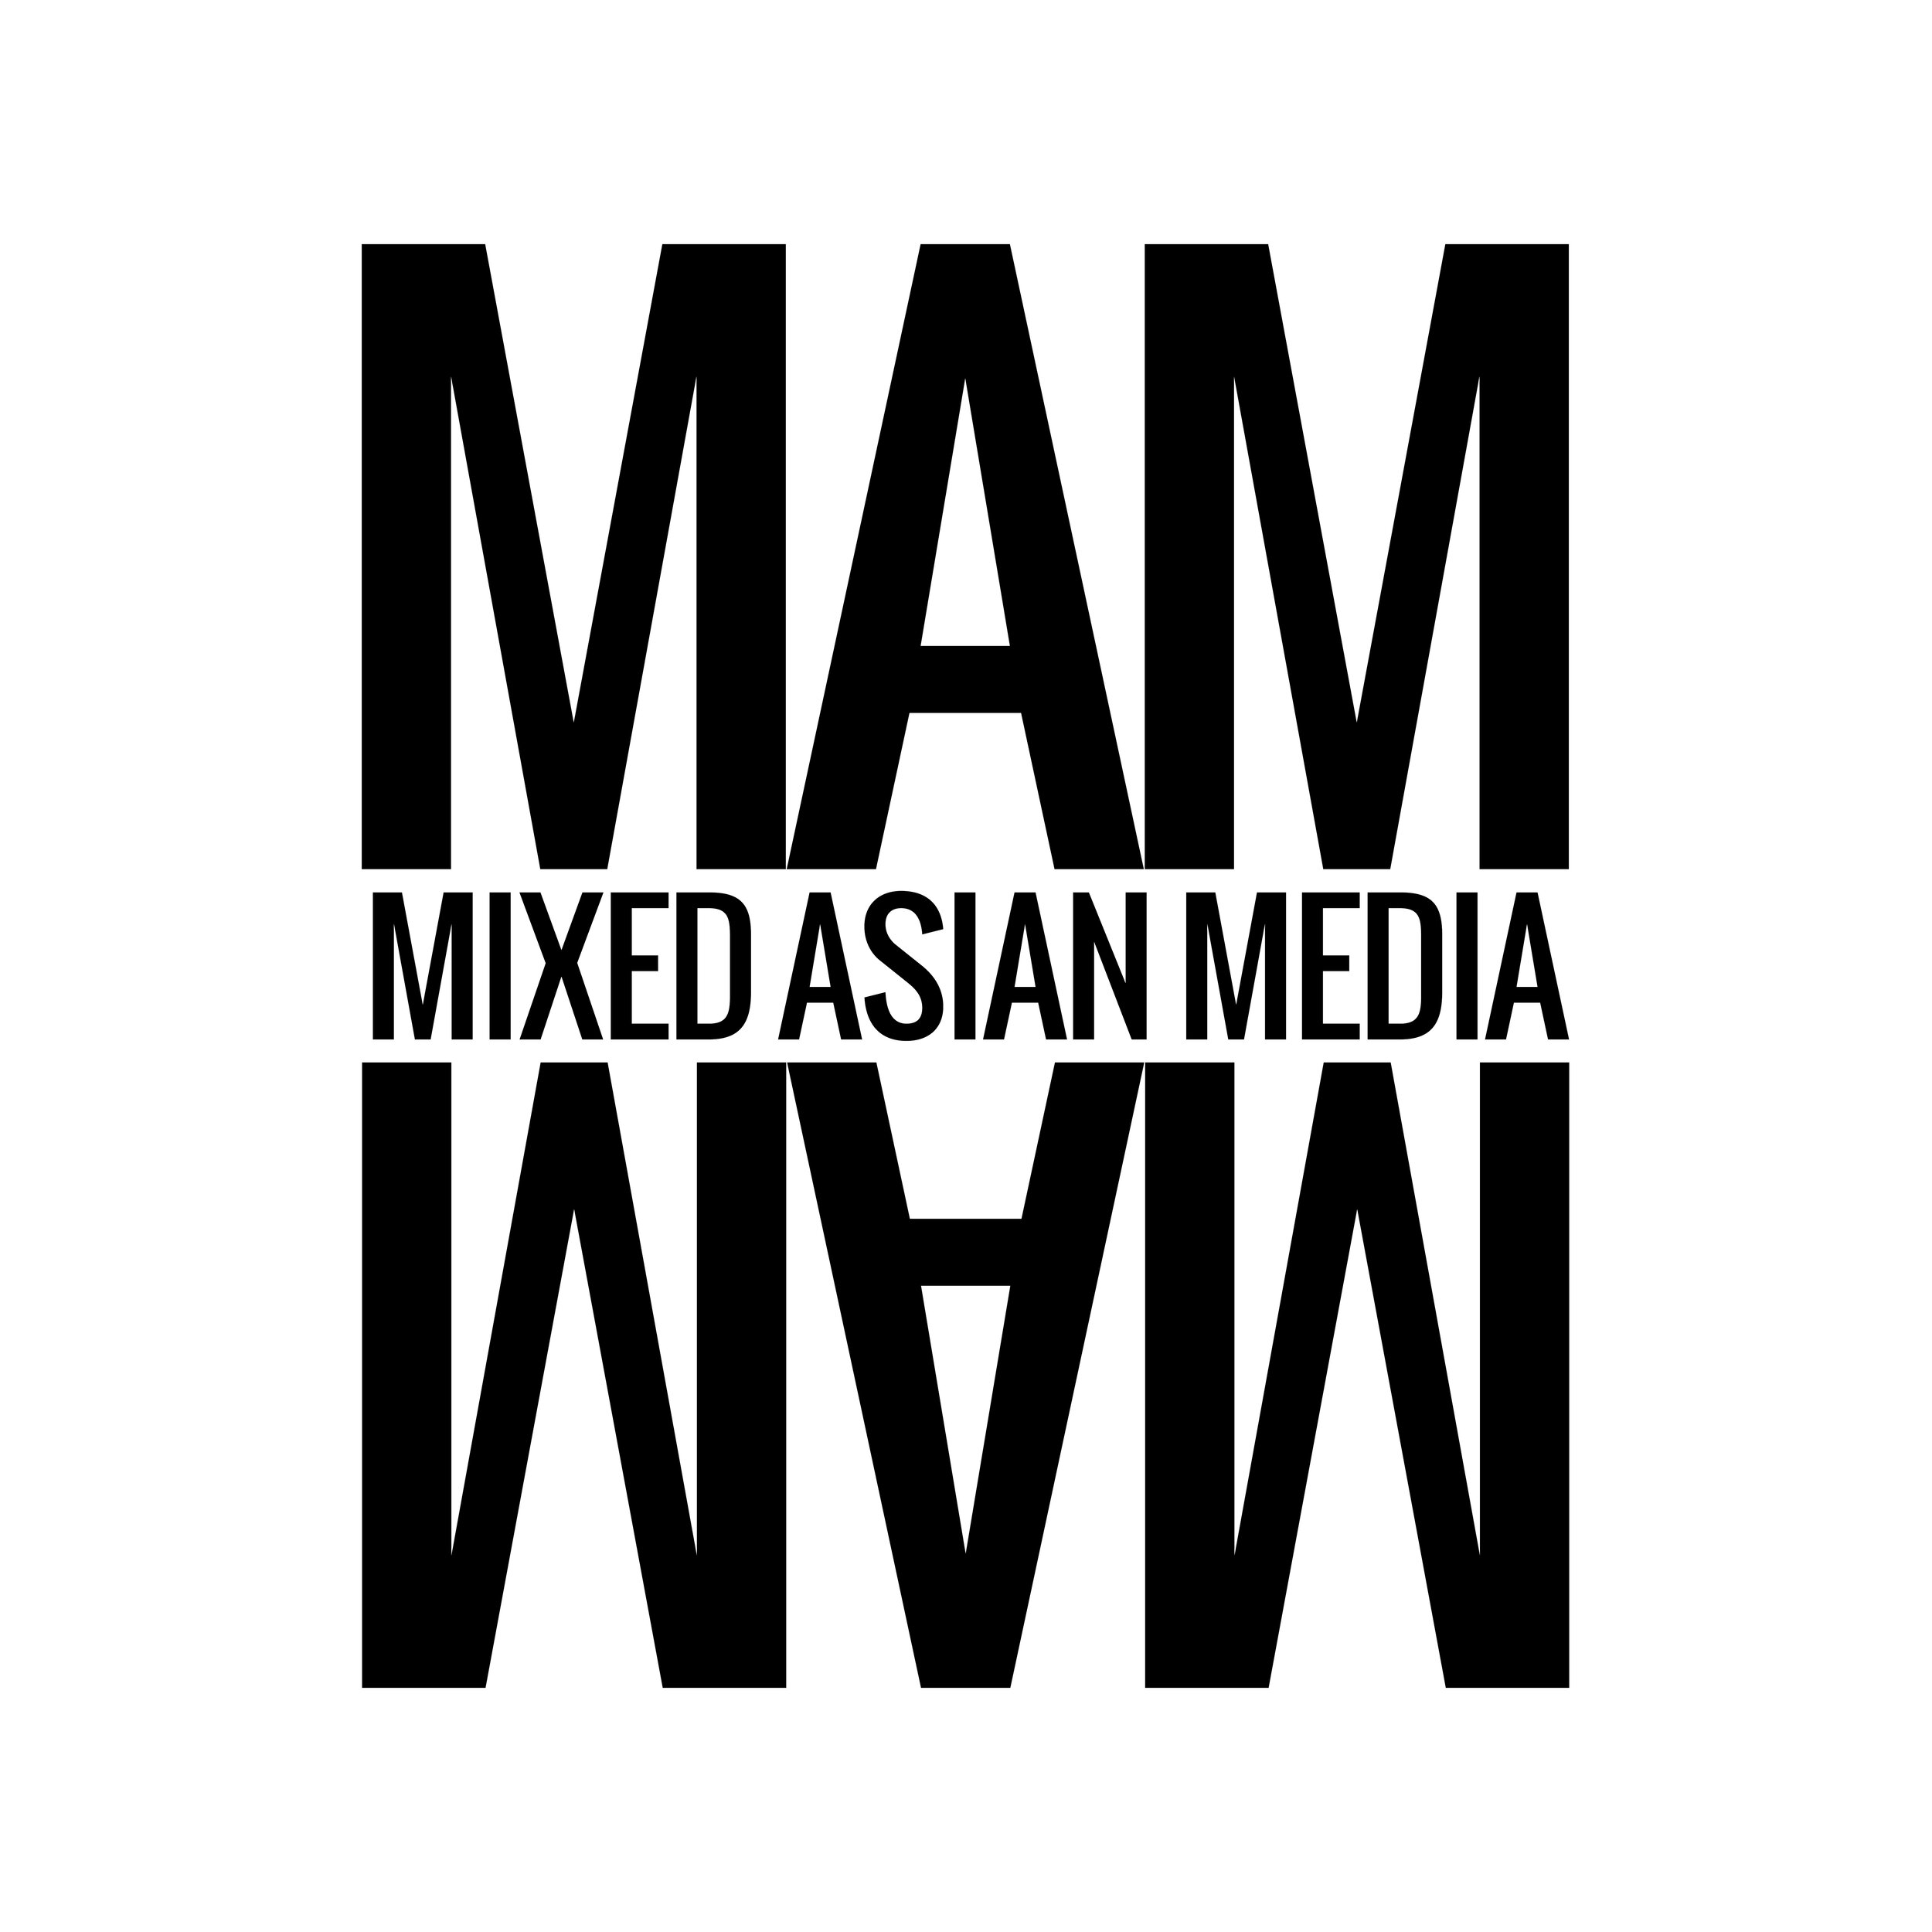 Mixed Asian Media